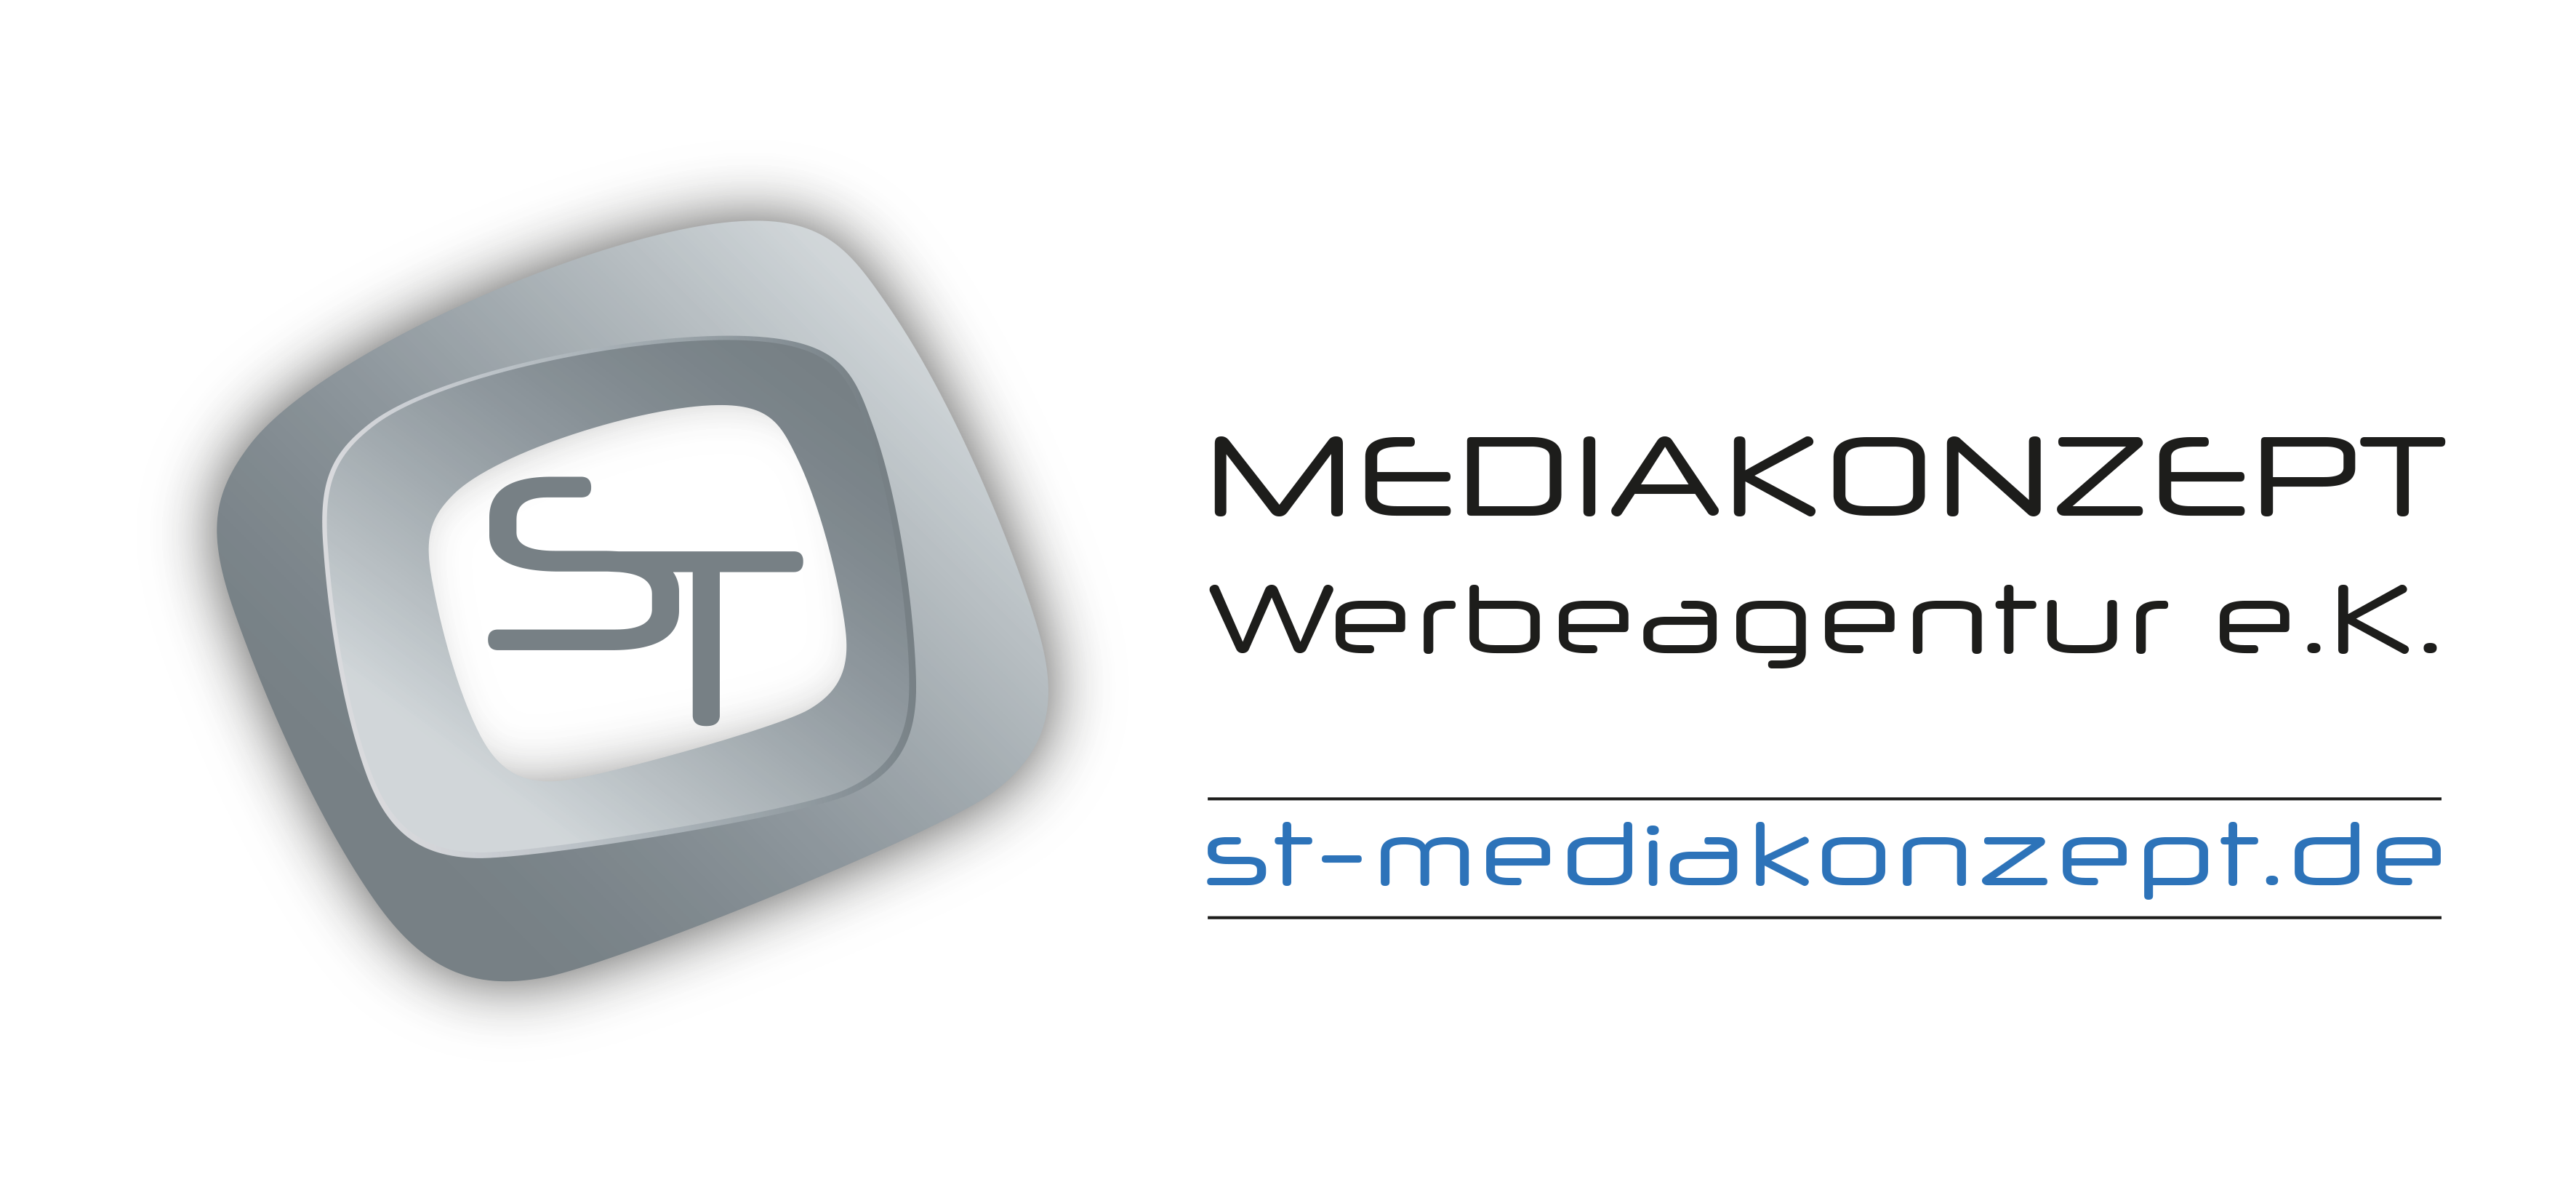 ST Mediakonzept Werbeagentur